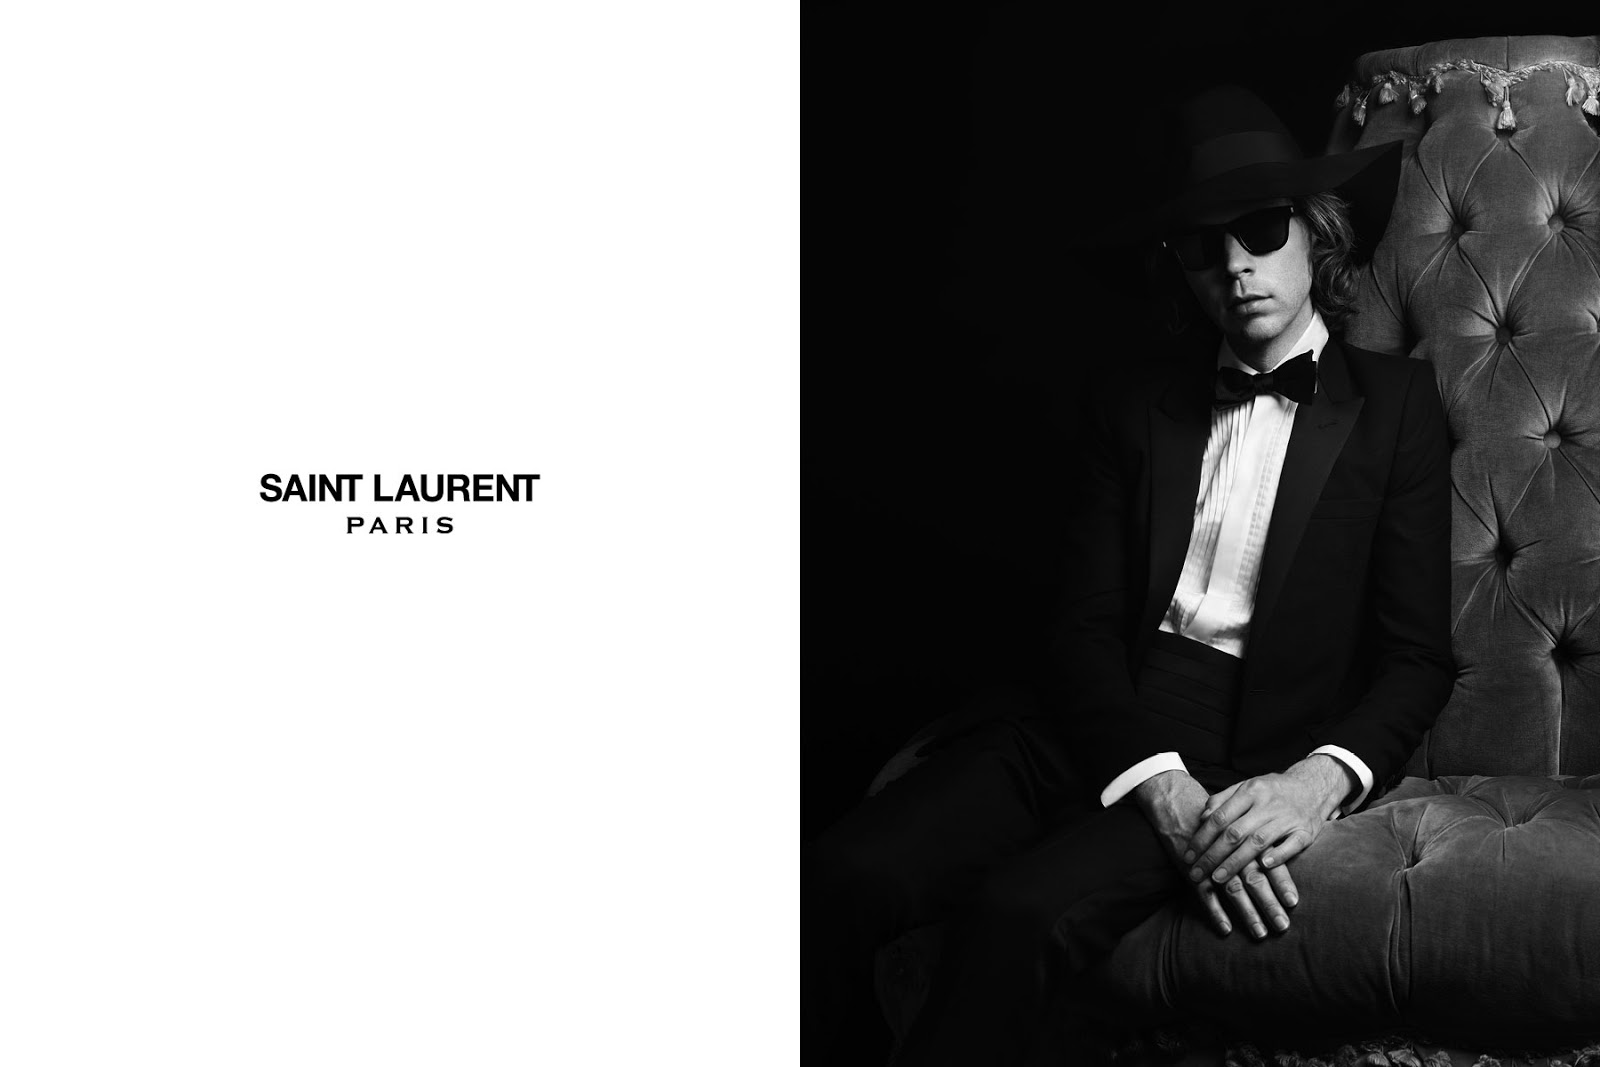 www.reneeruin.com: Saint Laurent's Spring 2013 Campaign | Part Deux ...